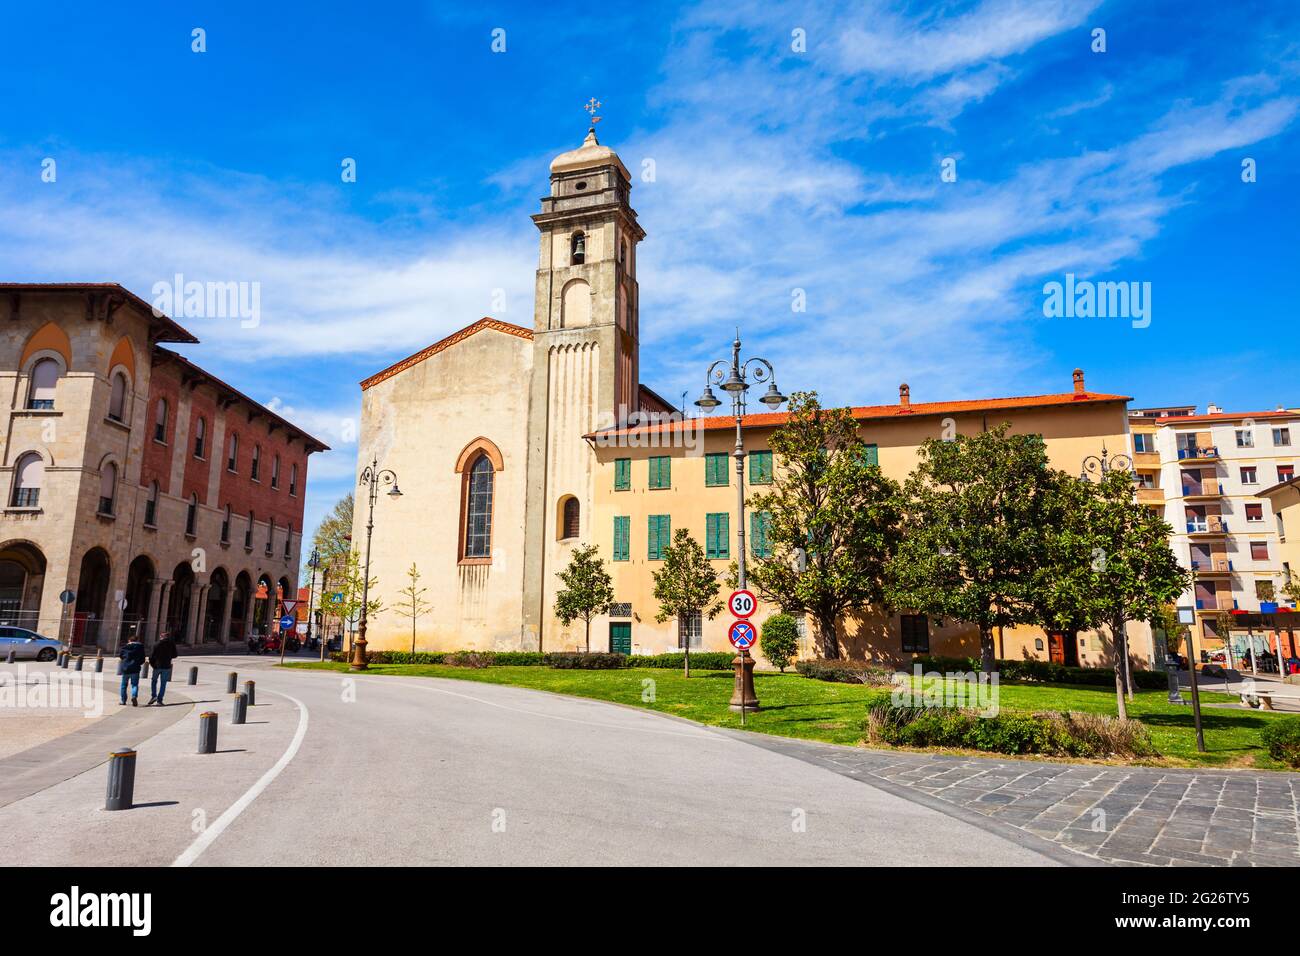 L'abbaye de Saint Antoine est une église catholique près de la Piazza Vittorio Emanuele, dans le centre-ville de Pise en Toscane, Italie Banque D'Images